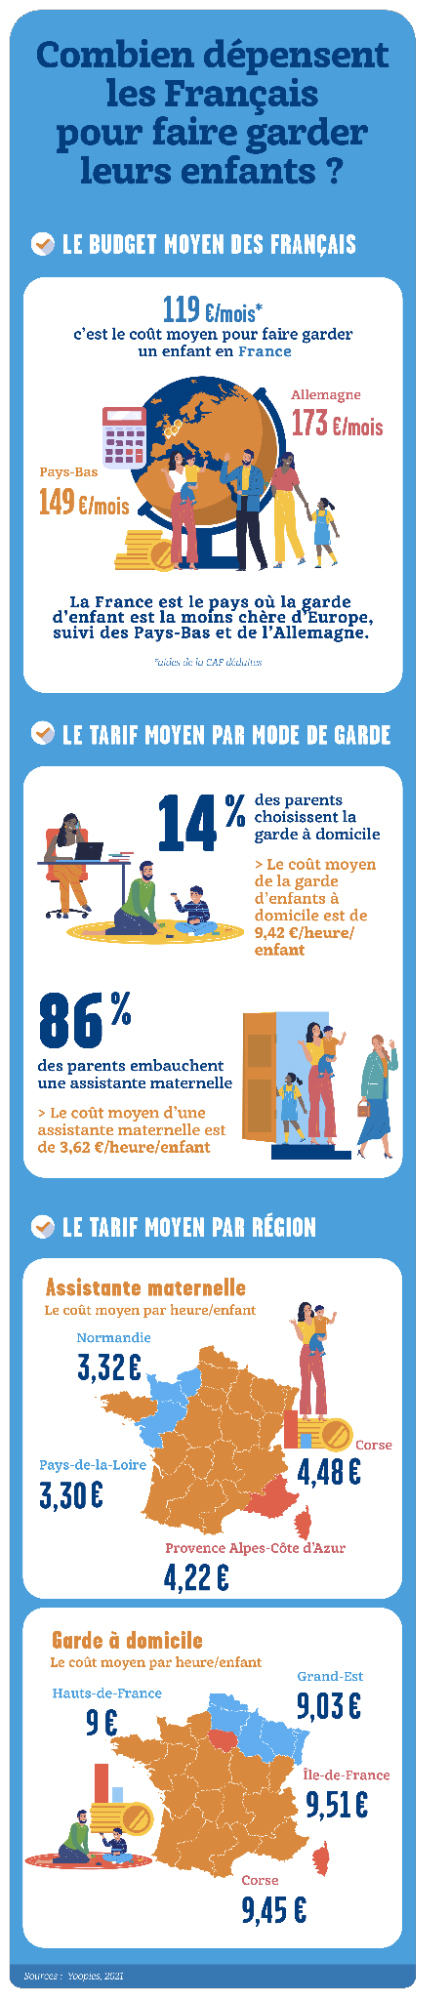 Combien dépensent les Français pour faire garder leurs enfants ?